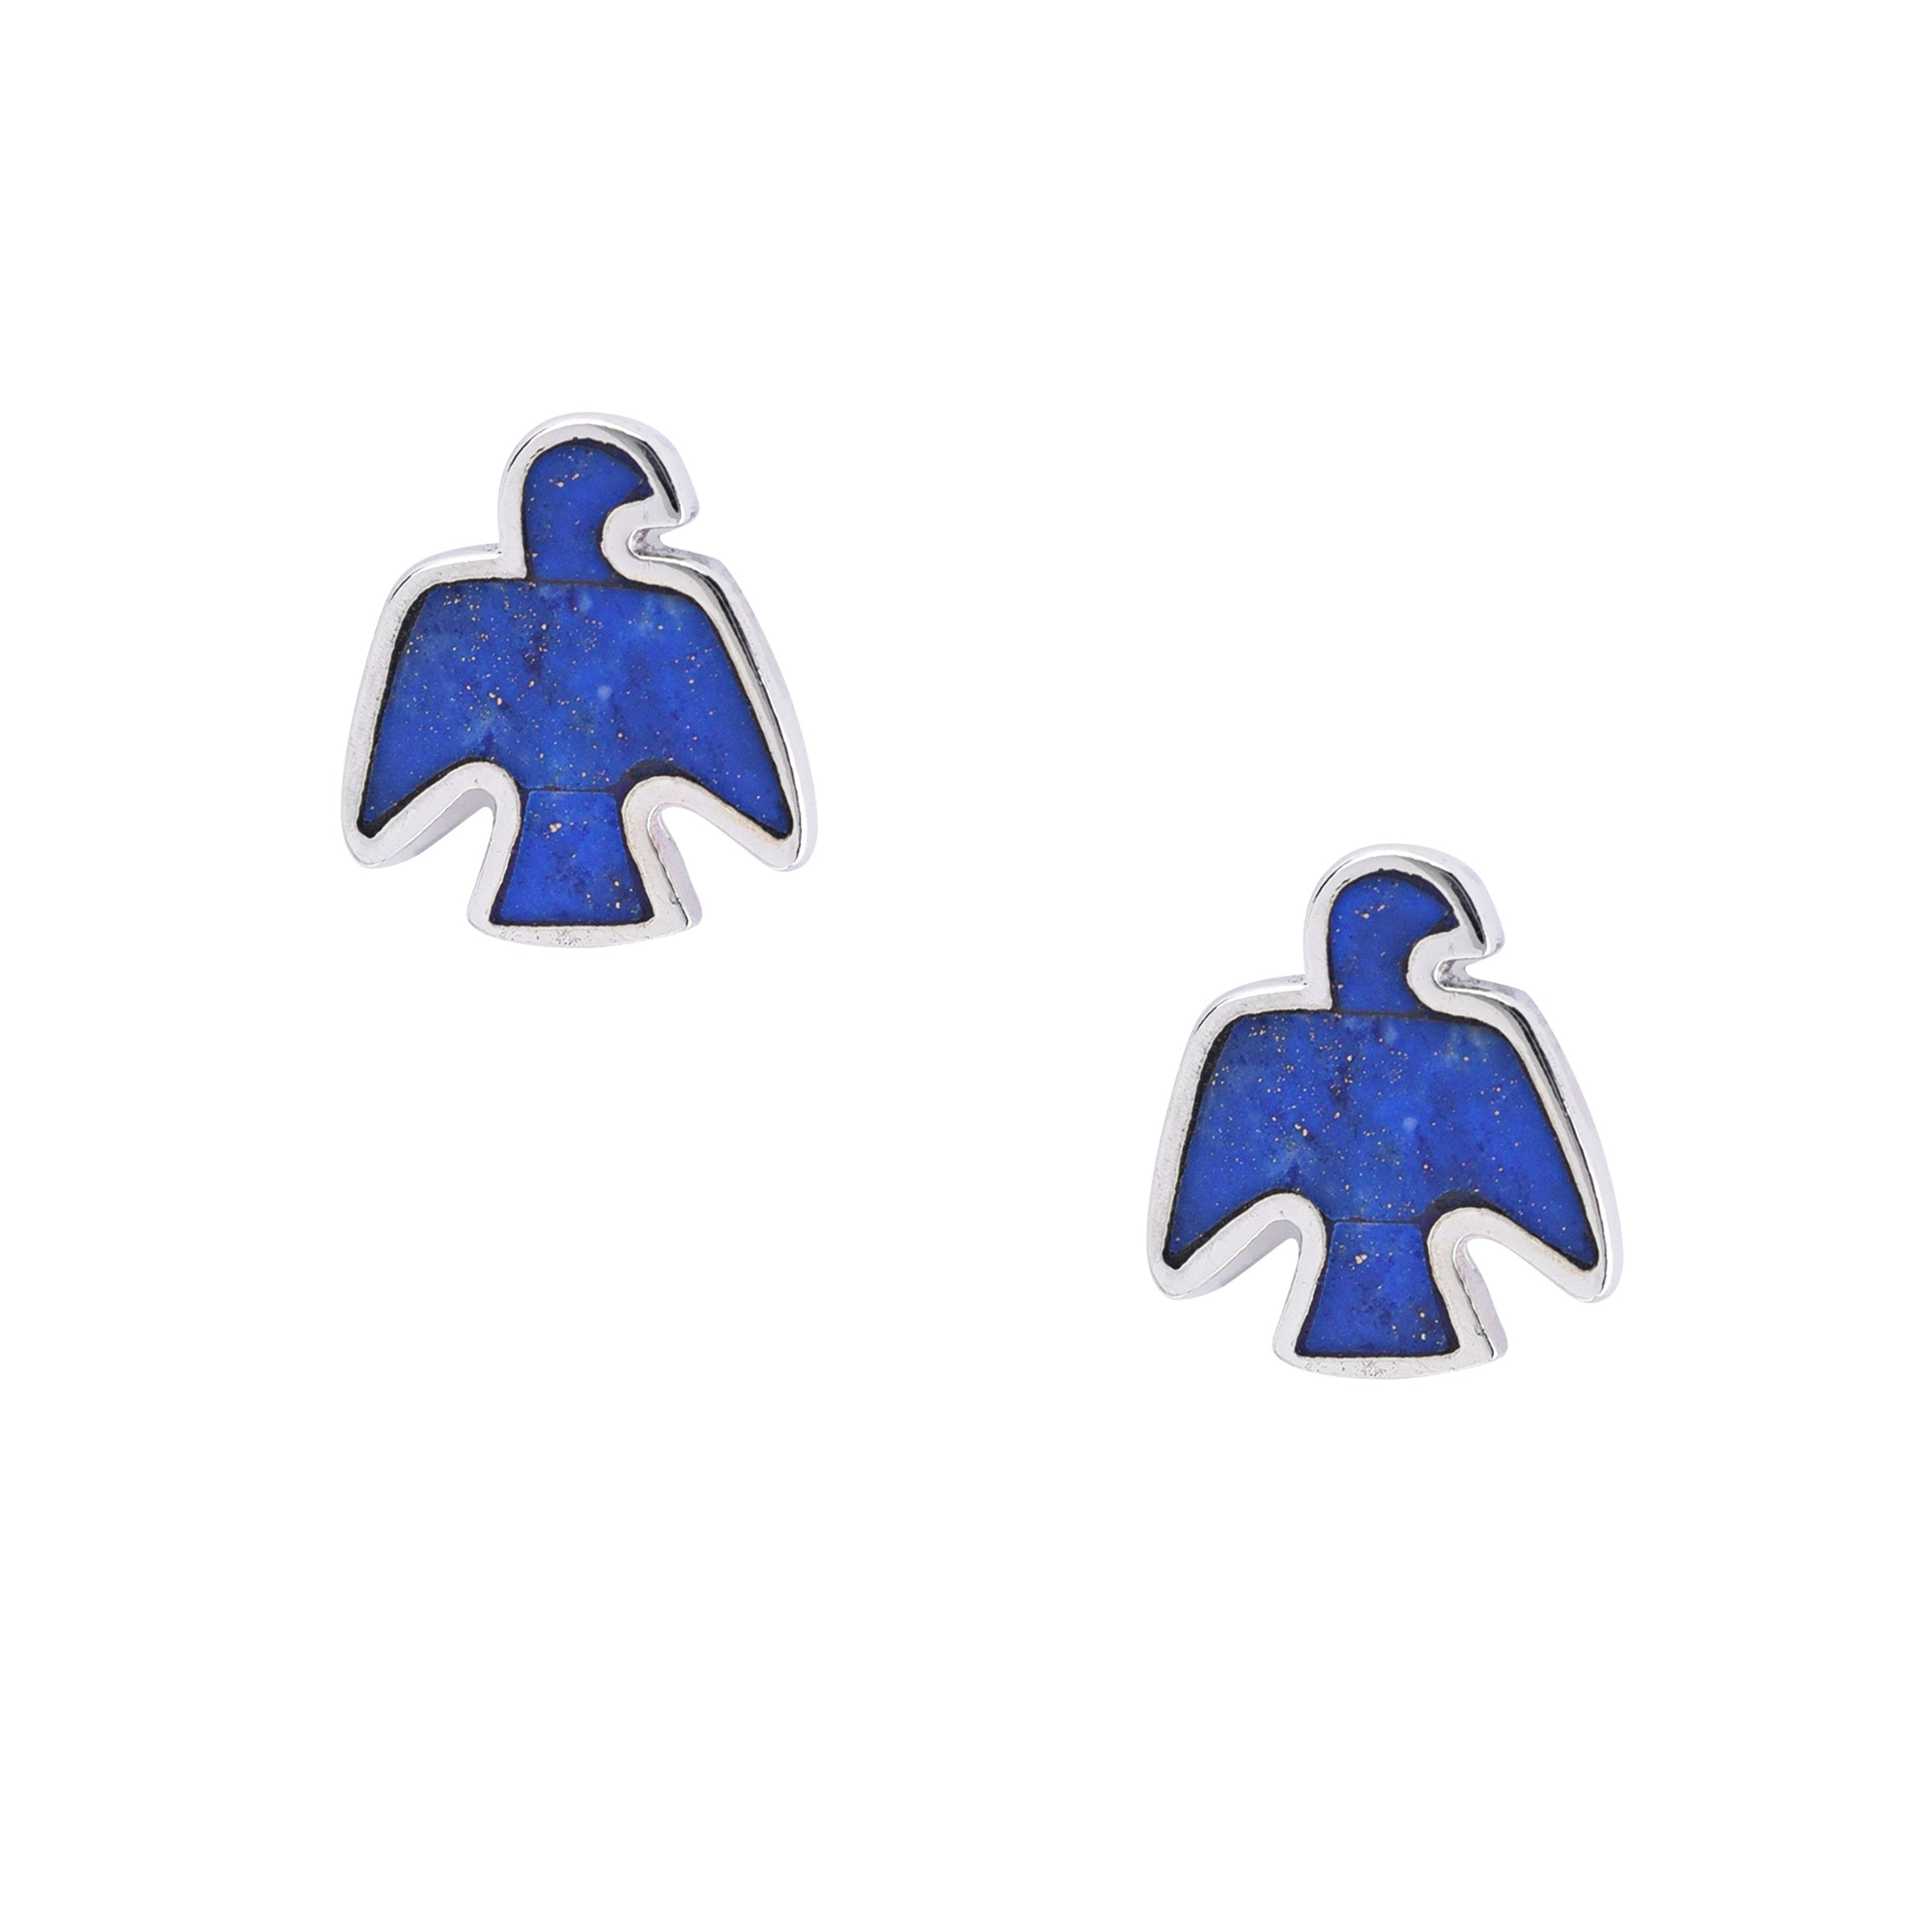 Peyote Bird Stud Earrings